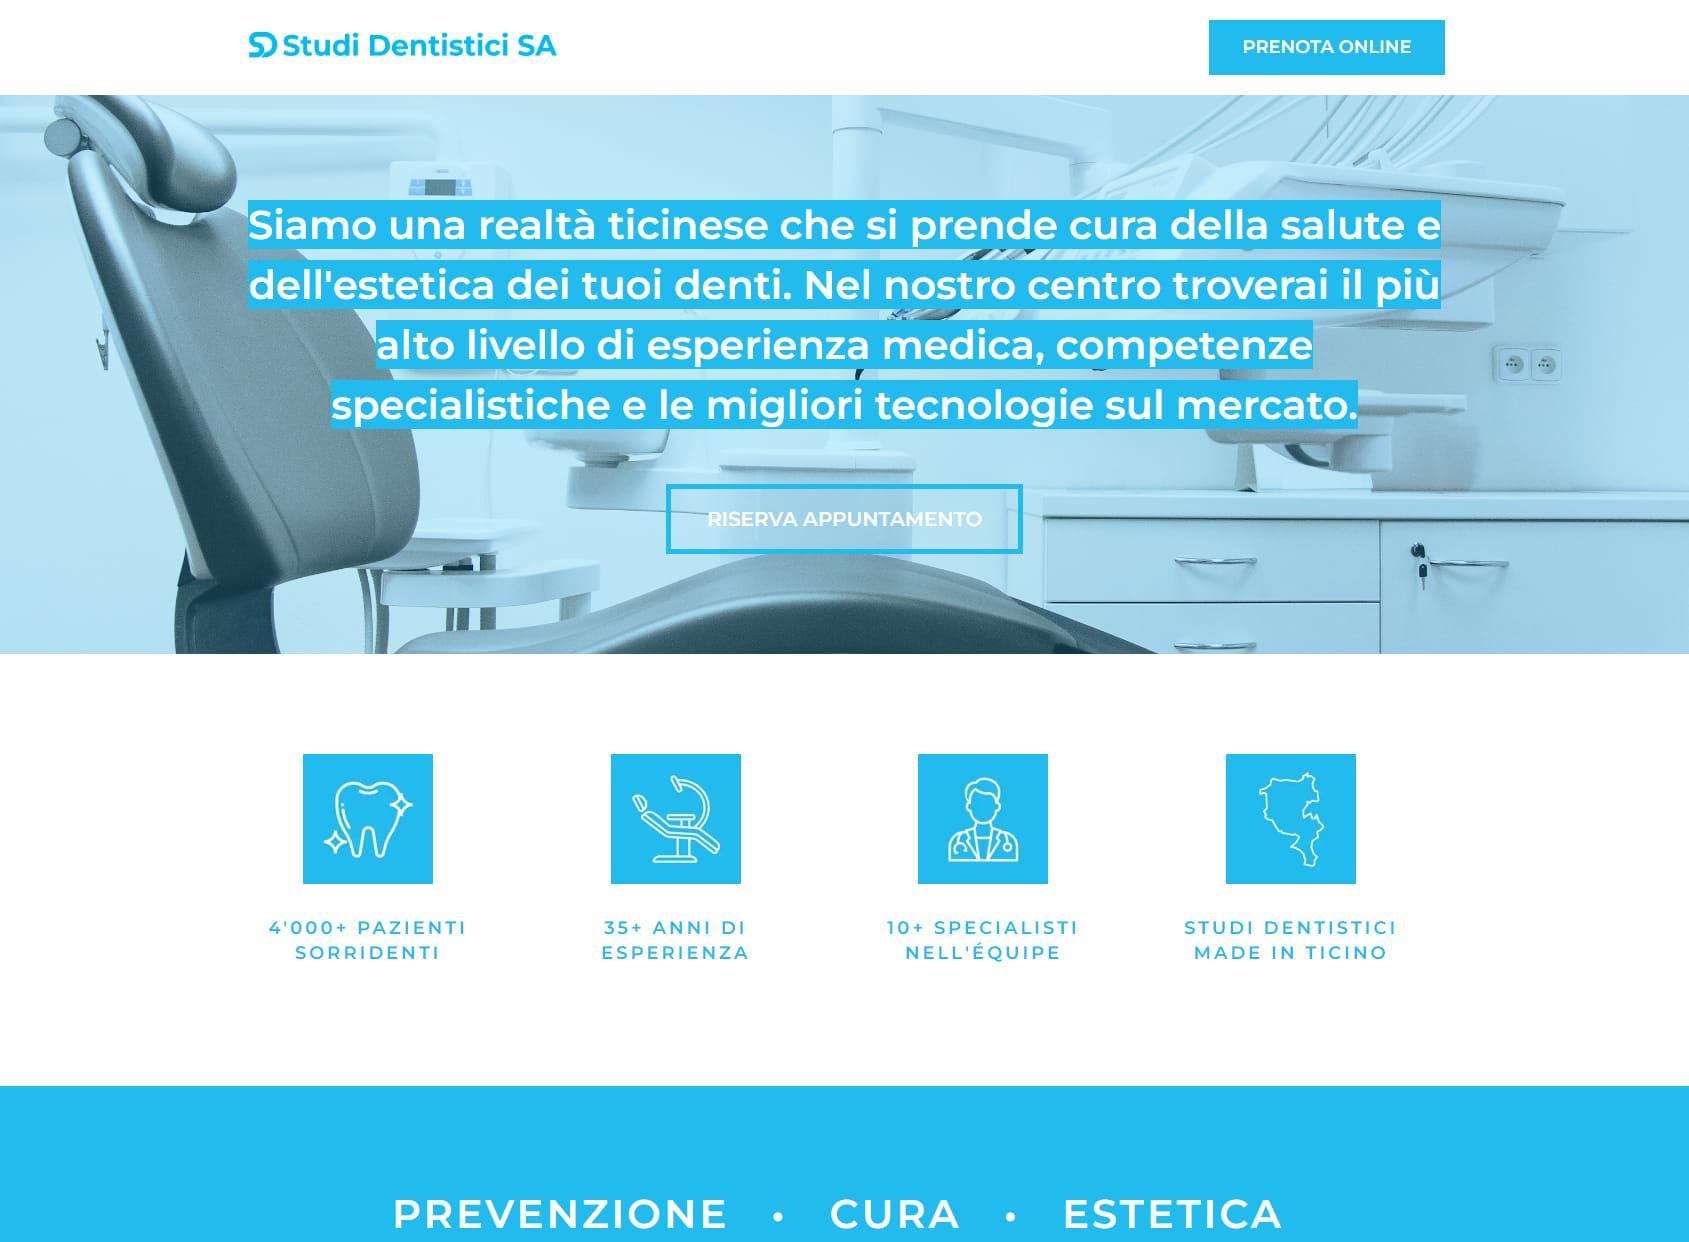 SD Studi Dentistici SA Lugano – Dr. Giorgio Cattaneo & Dr. Lauro Boschetti